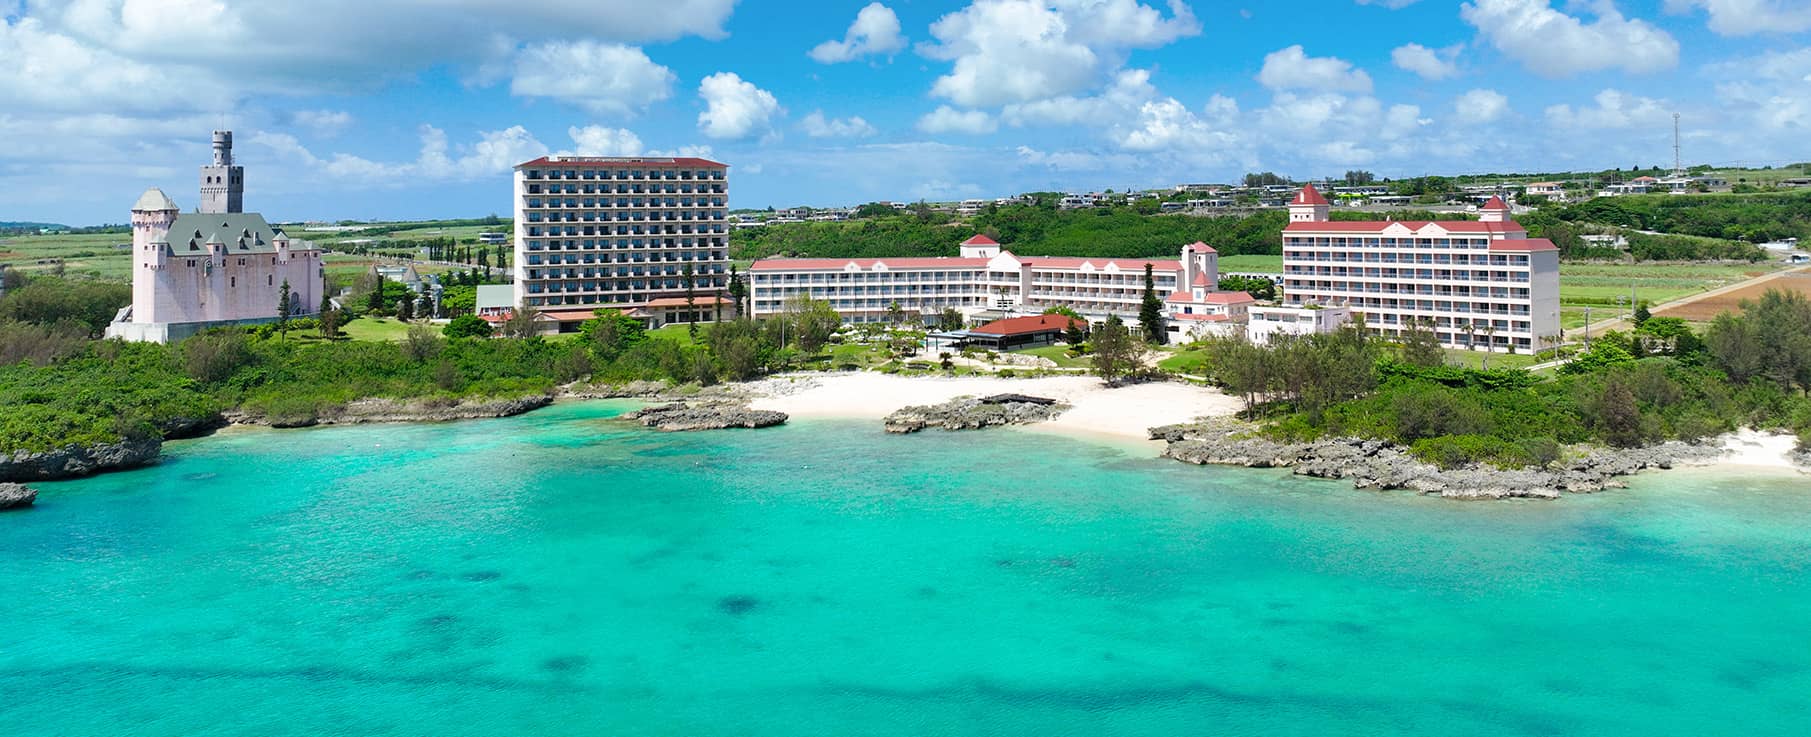 ホテルブリーズベイマリーナ 公式 南の島に抱く期待にまっすぐ応えるホテル シギラセブンマイルズリゾート 沖縄宮古島